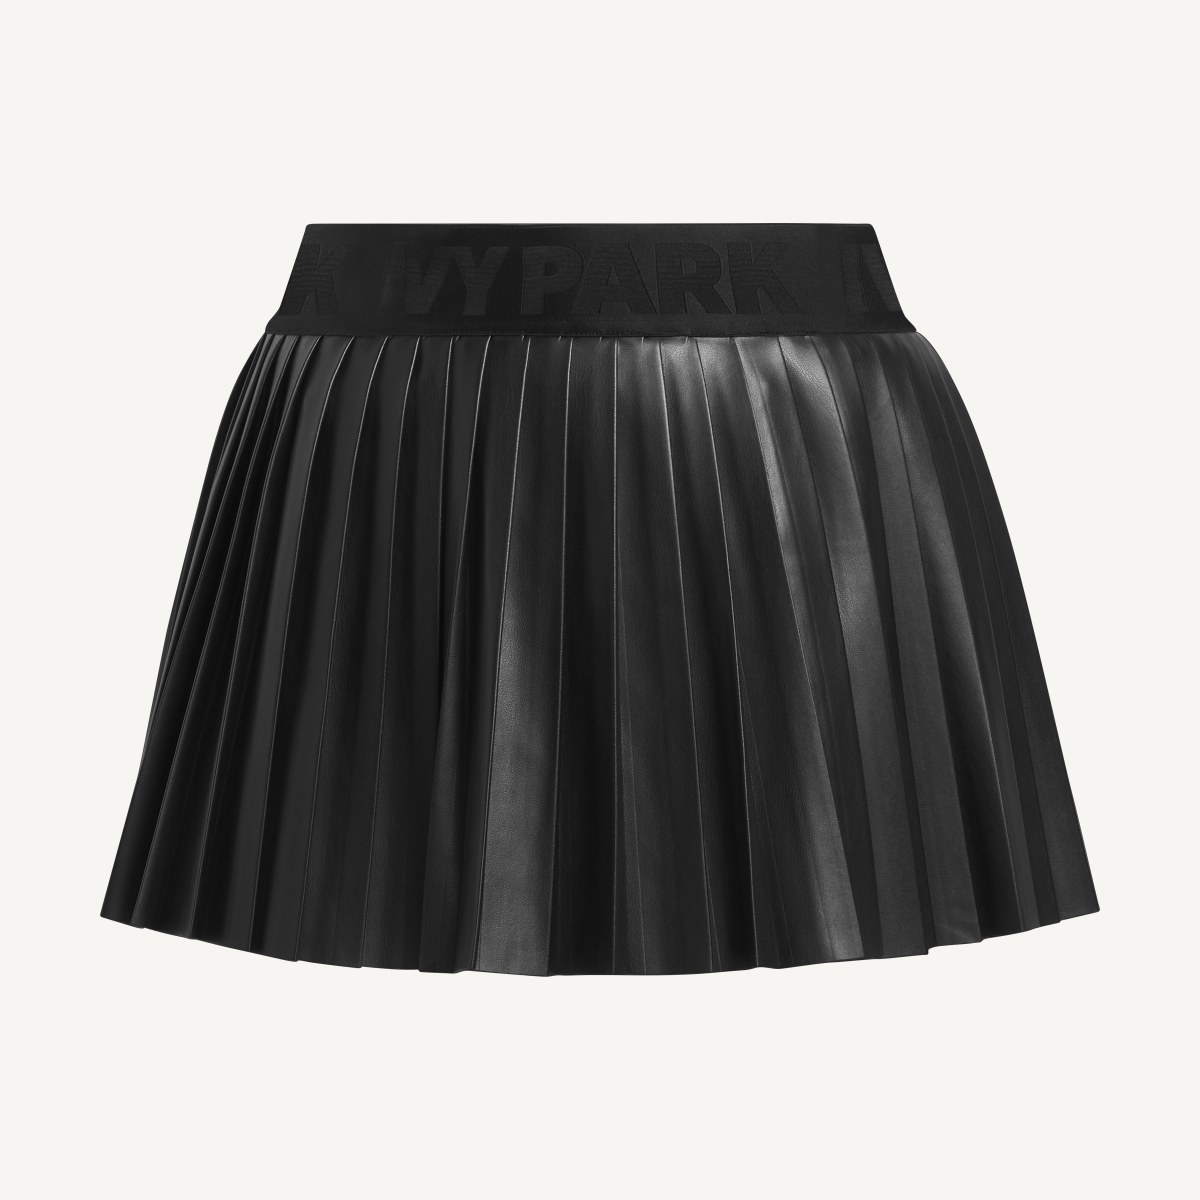 Adidas Leather Pleated Mini Skirt (Plus Size). 4